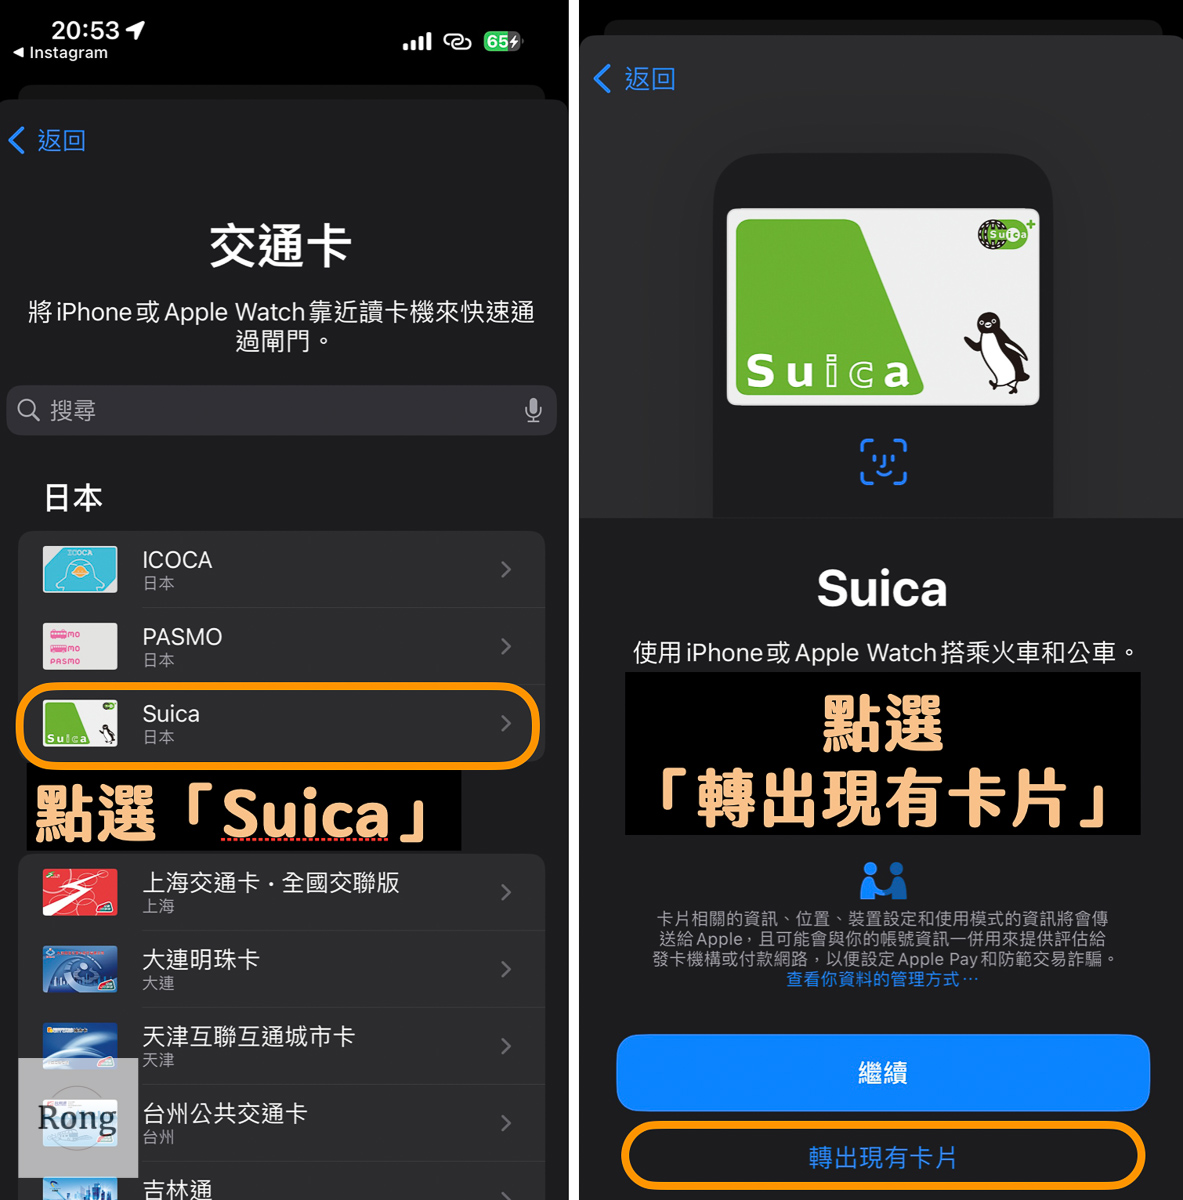 實體 Suica 卡轉移 iPhone 圖解：選擇日本的「Suica」交通卡後，選擇「轉出現有卡片」